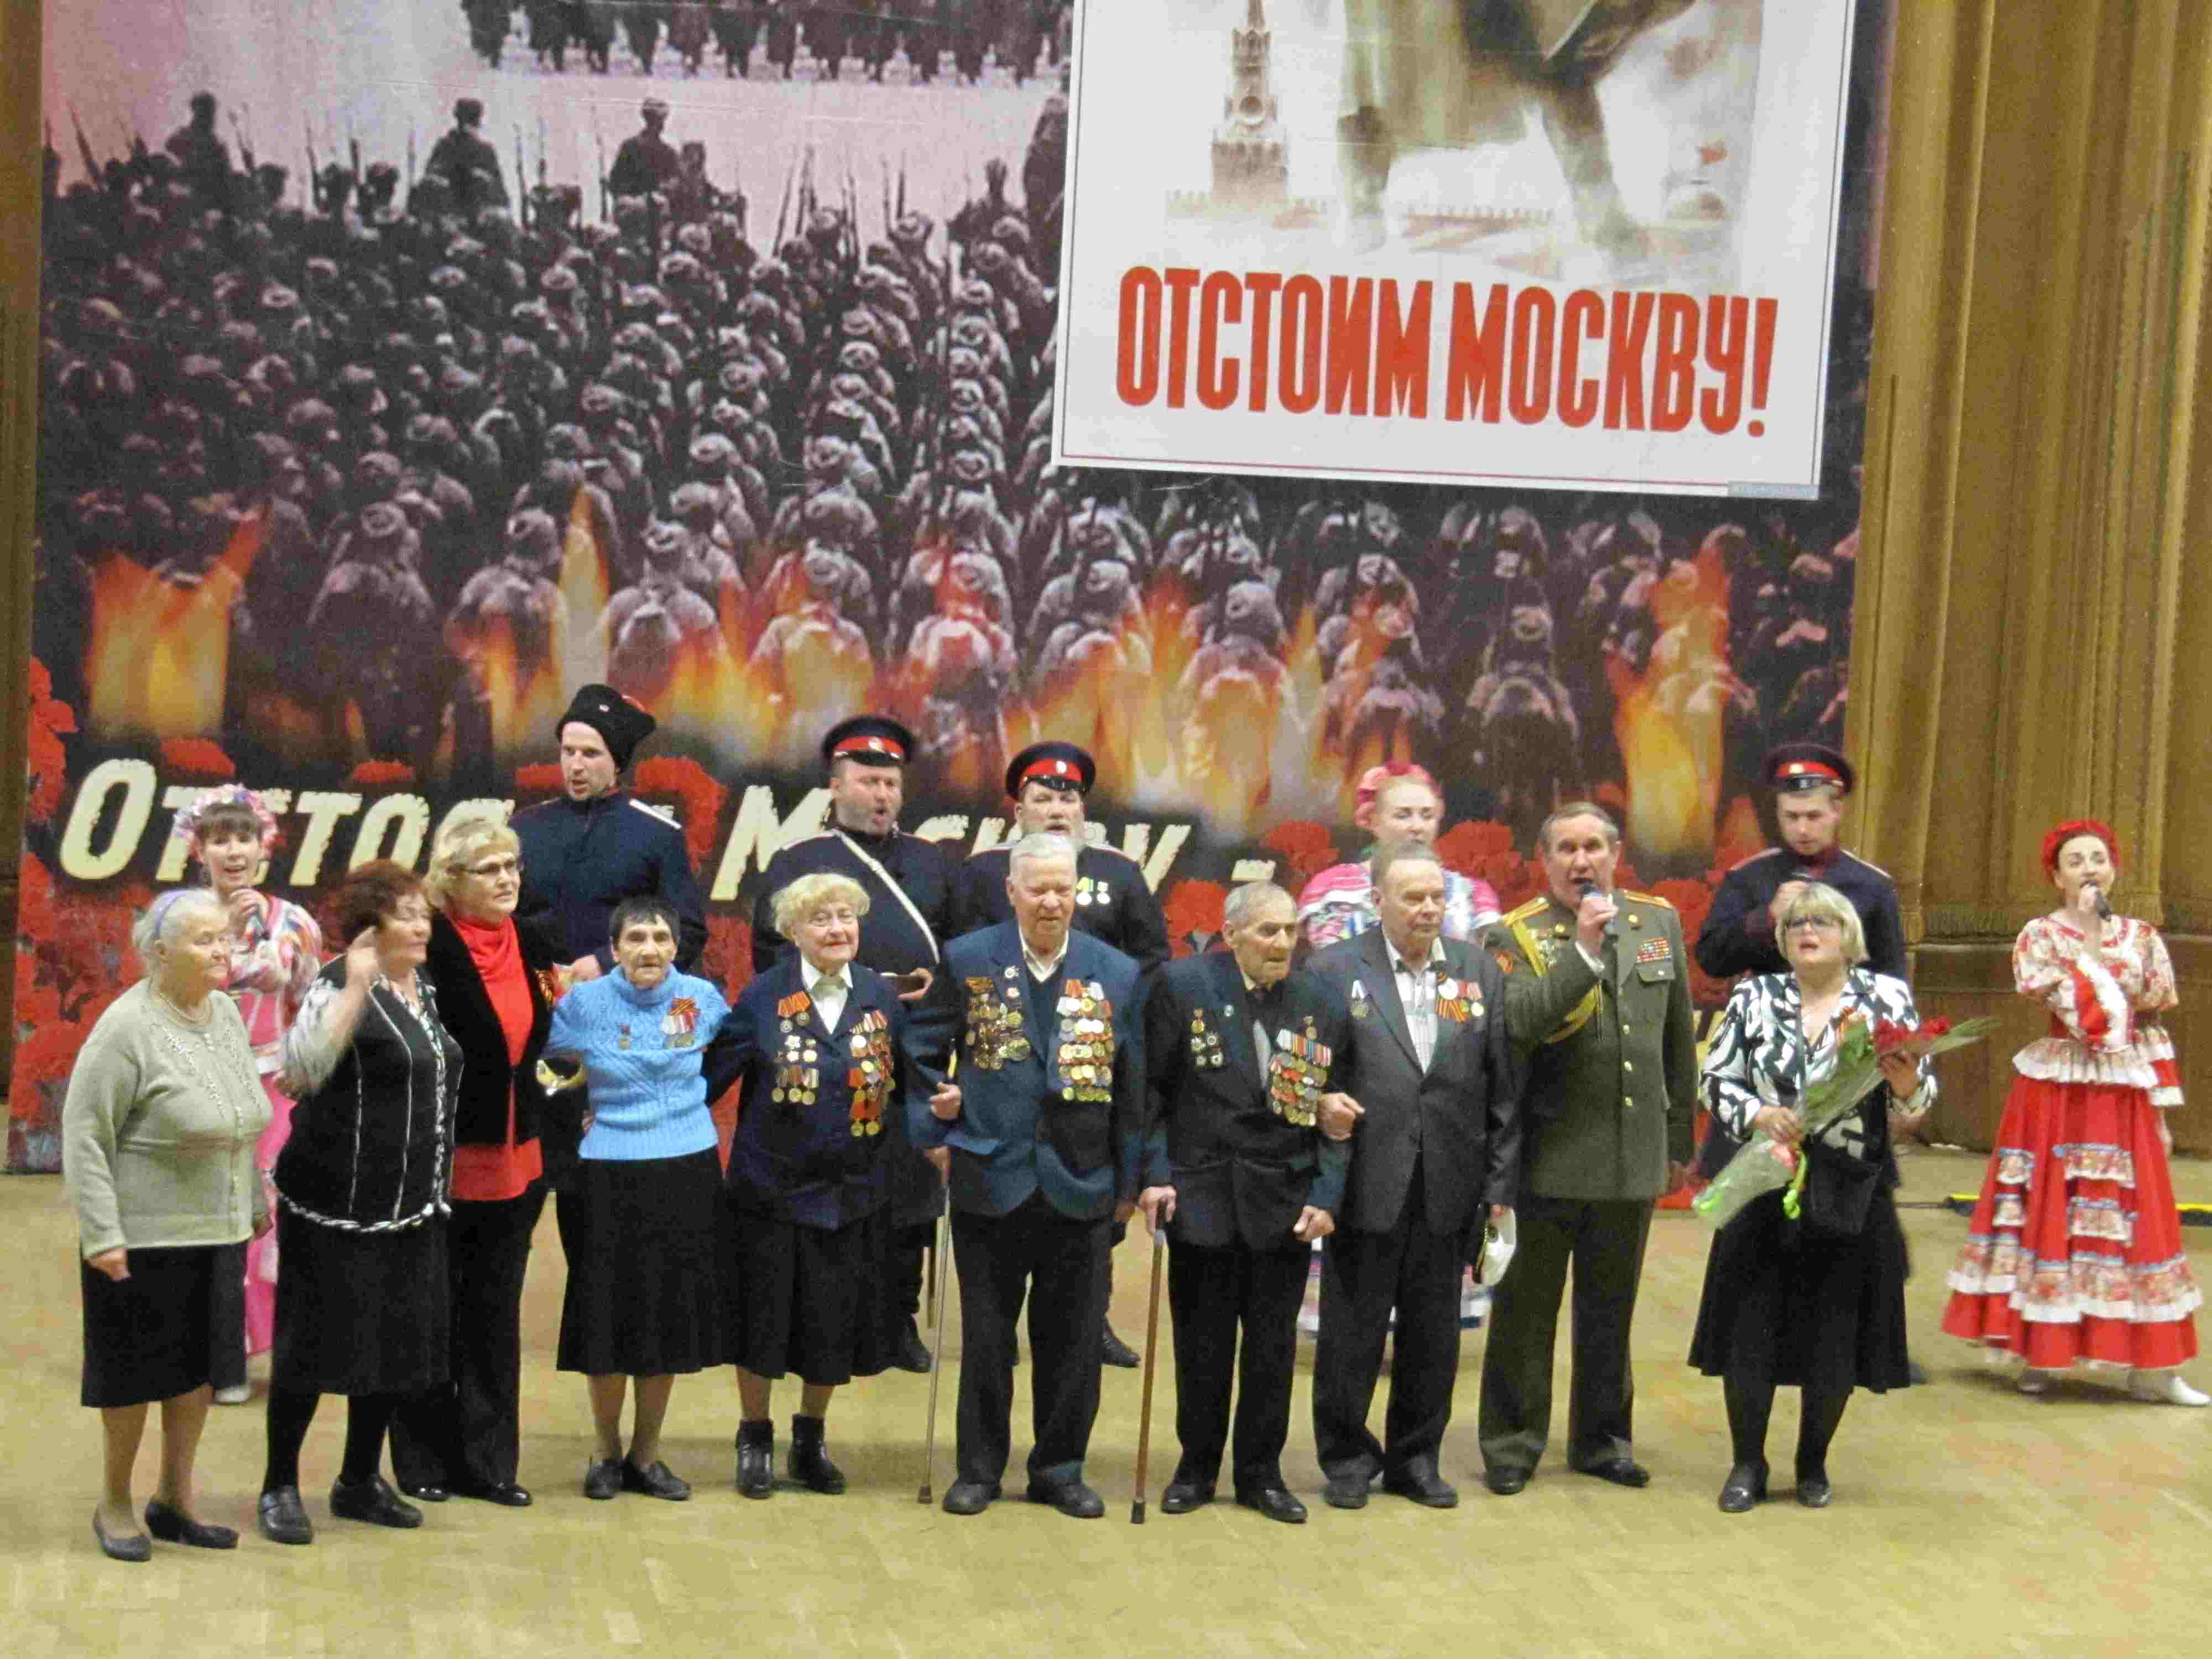 7 мая 2017 года члены МРО Новокосино посетили театр Моссовета